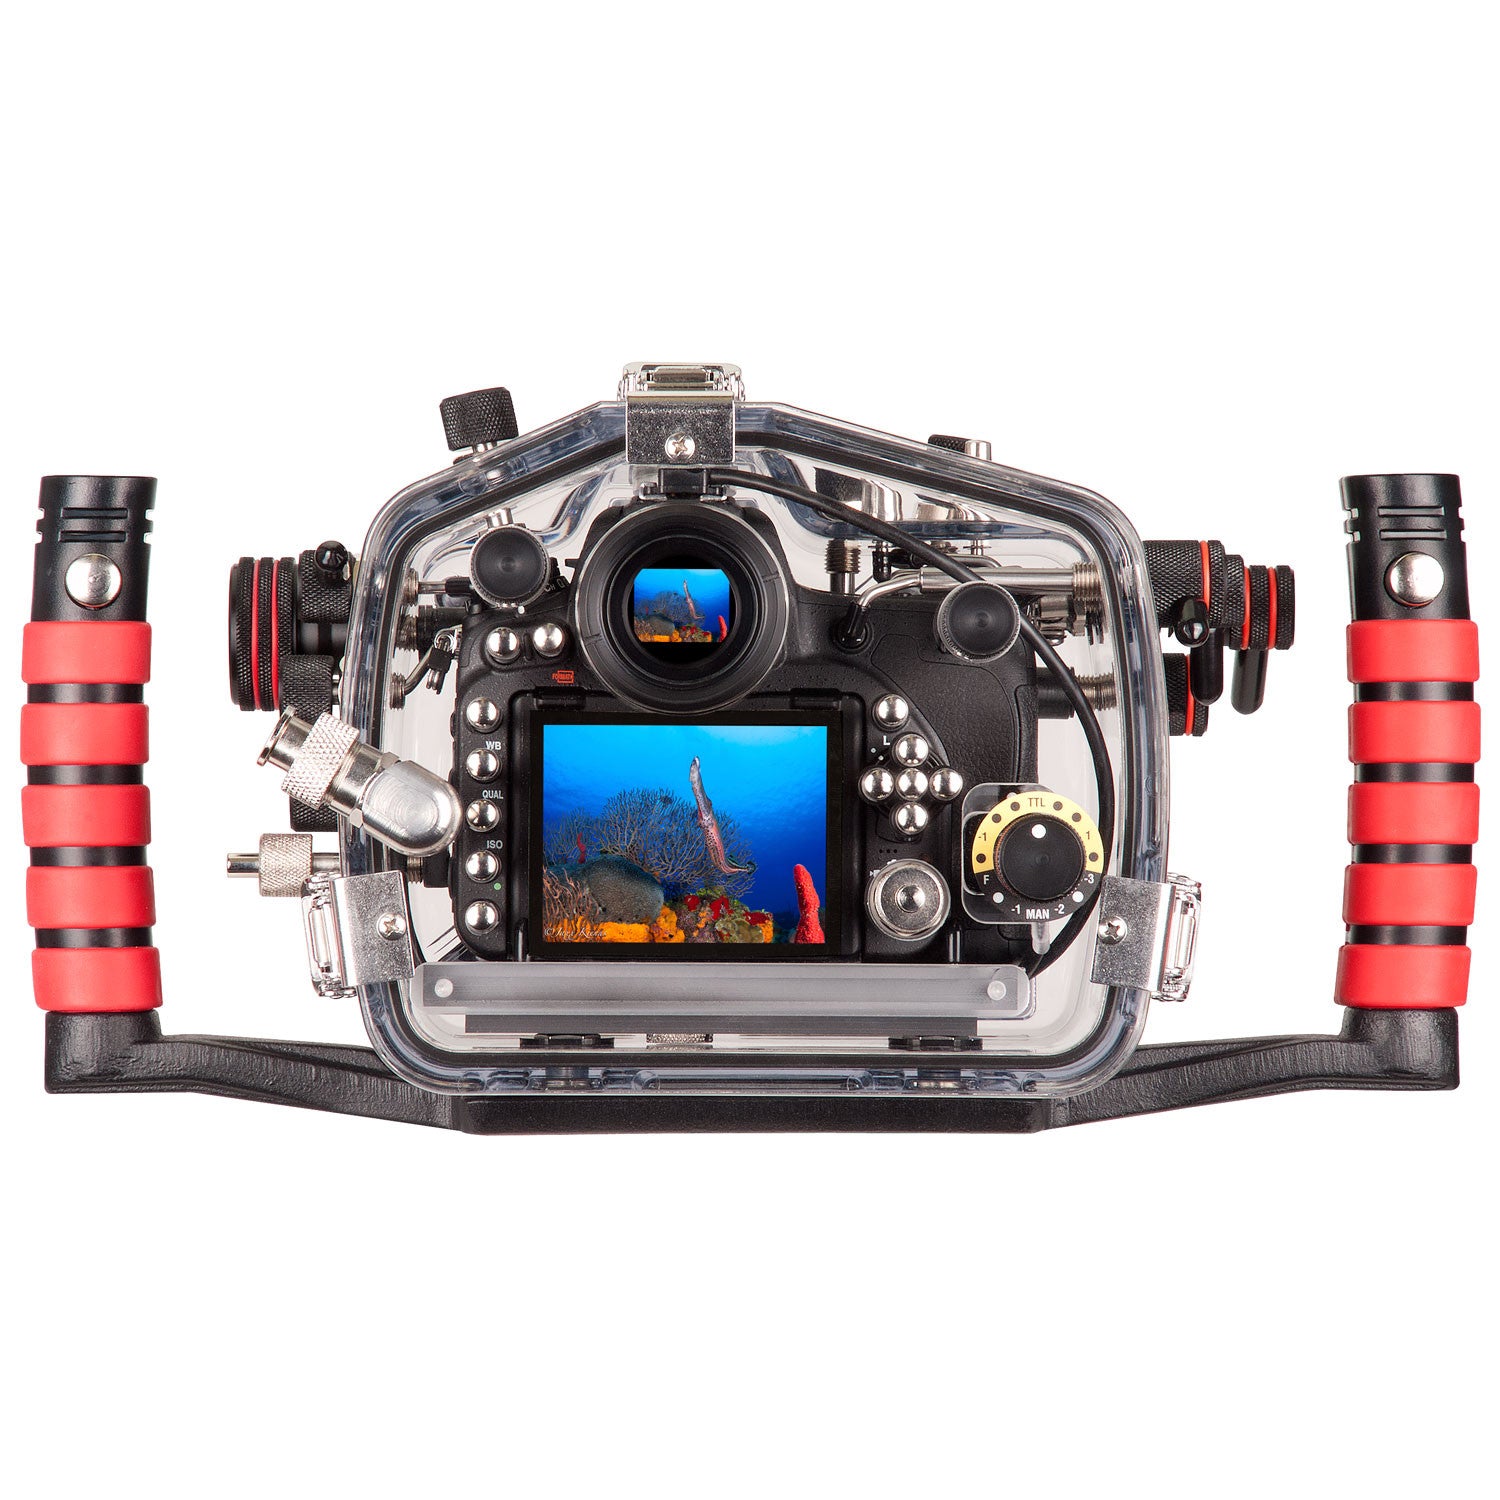 200FL Underwater TTL Housing for Nikon D750 DSLR Camera